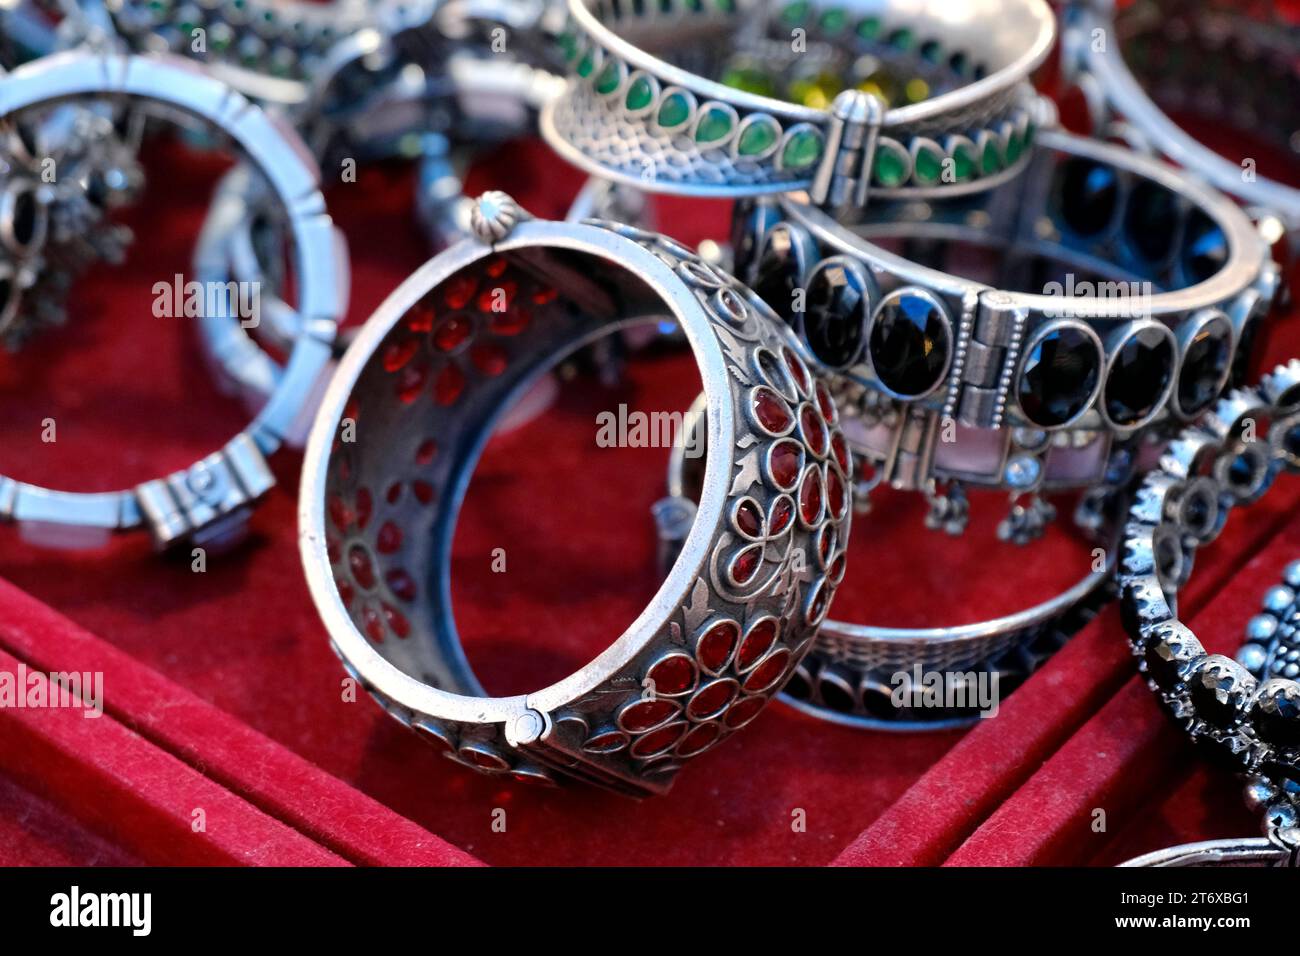 Indische Armreifen werden in einem lokalen Geschäft auf einem Markt in Pune, Indien, ausgestellt. Diese Armreifen sind aus Gold, Silber und Diamant als Schönheitszubehör für Indianer gefertigt Stockfoto